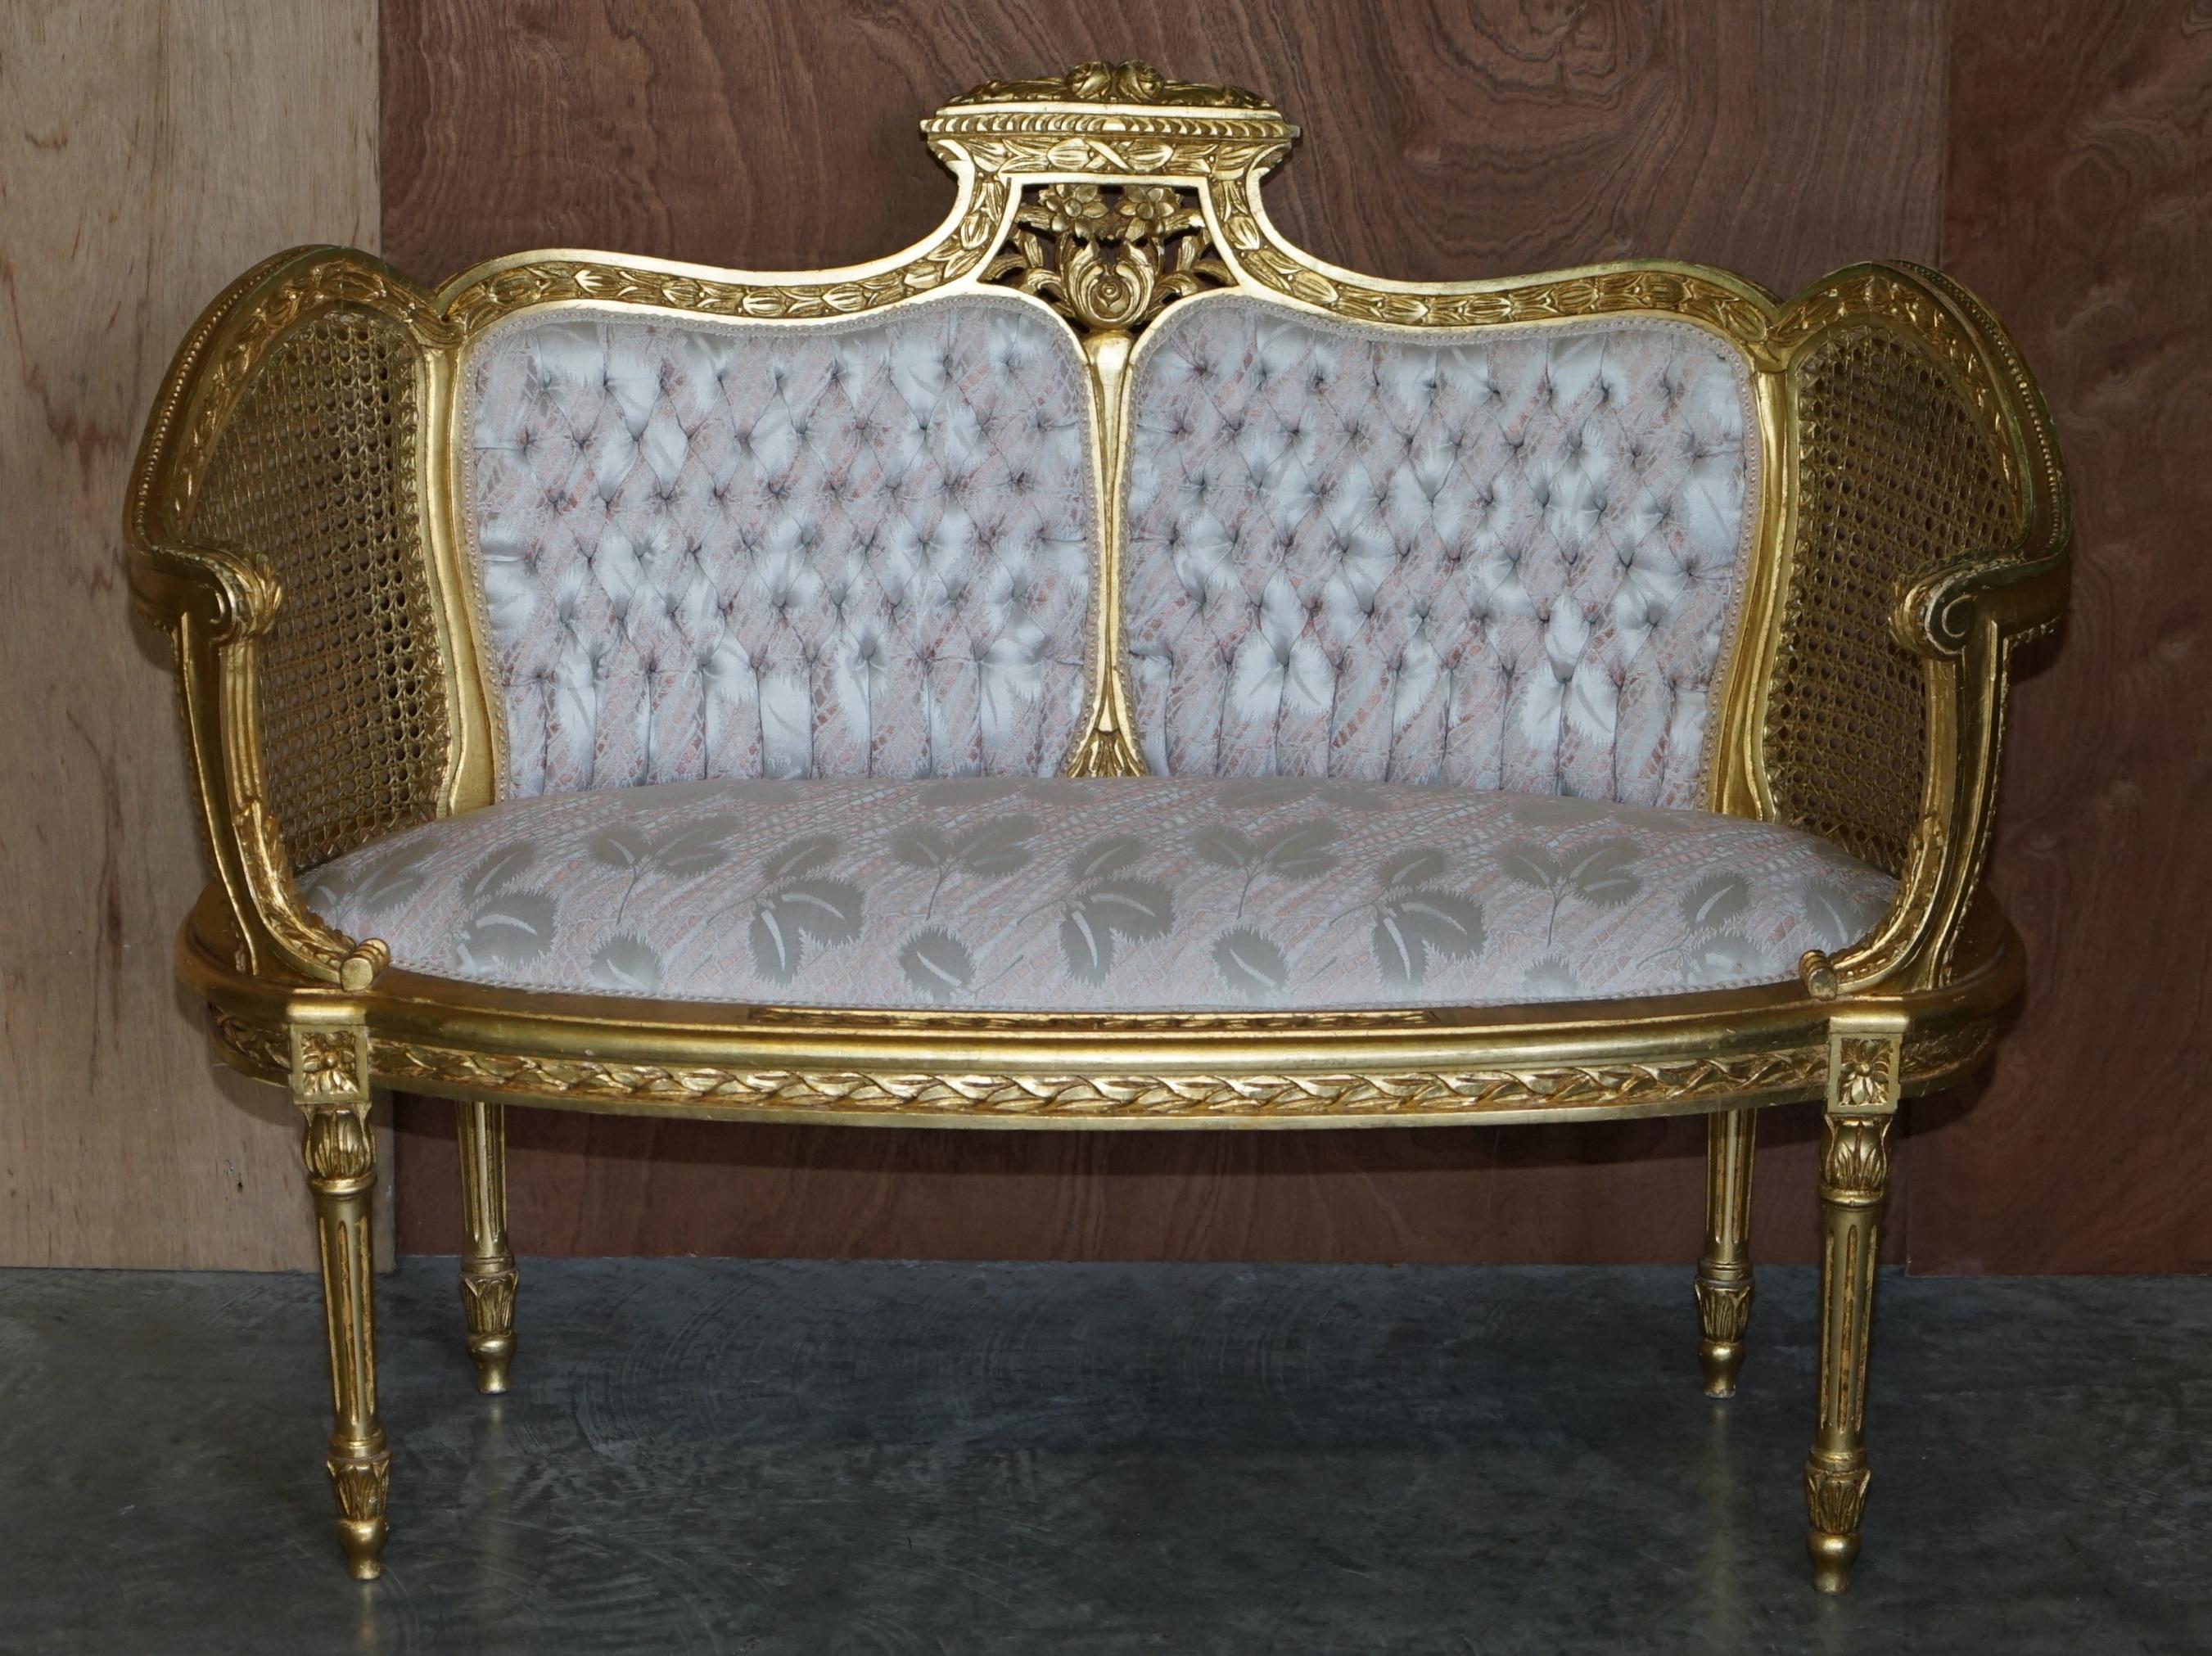 Wir freuen uns, Ihnen dieses atemberaubende Original-Sofa im Stil Louis XVI von Napoleon III (ca. 1860-1870) anbieten zu können, das Teil einer Suite ist. 

Dieses Sofa kommt mit einem passenden Paar von Salon Sesseln, die unter meinen anderen